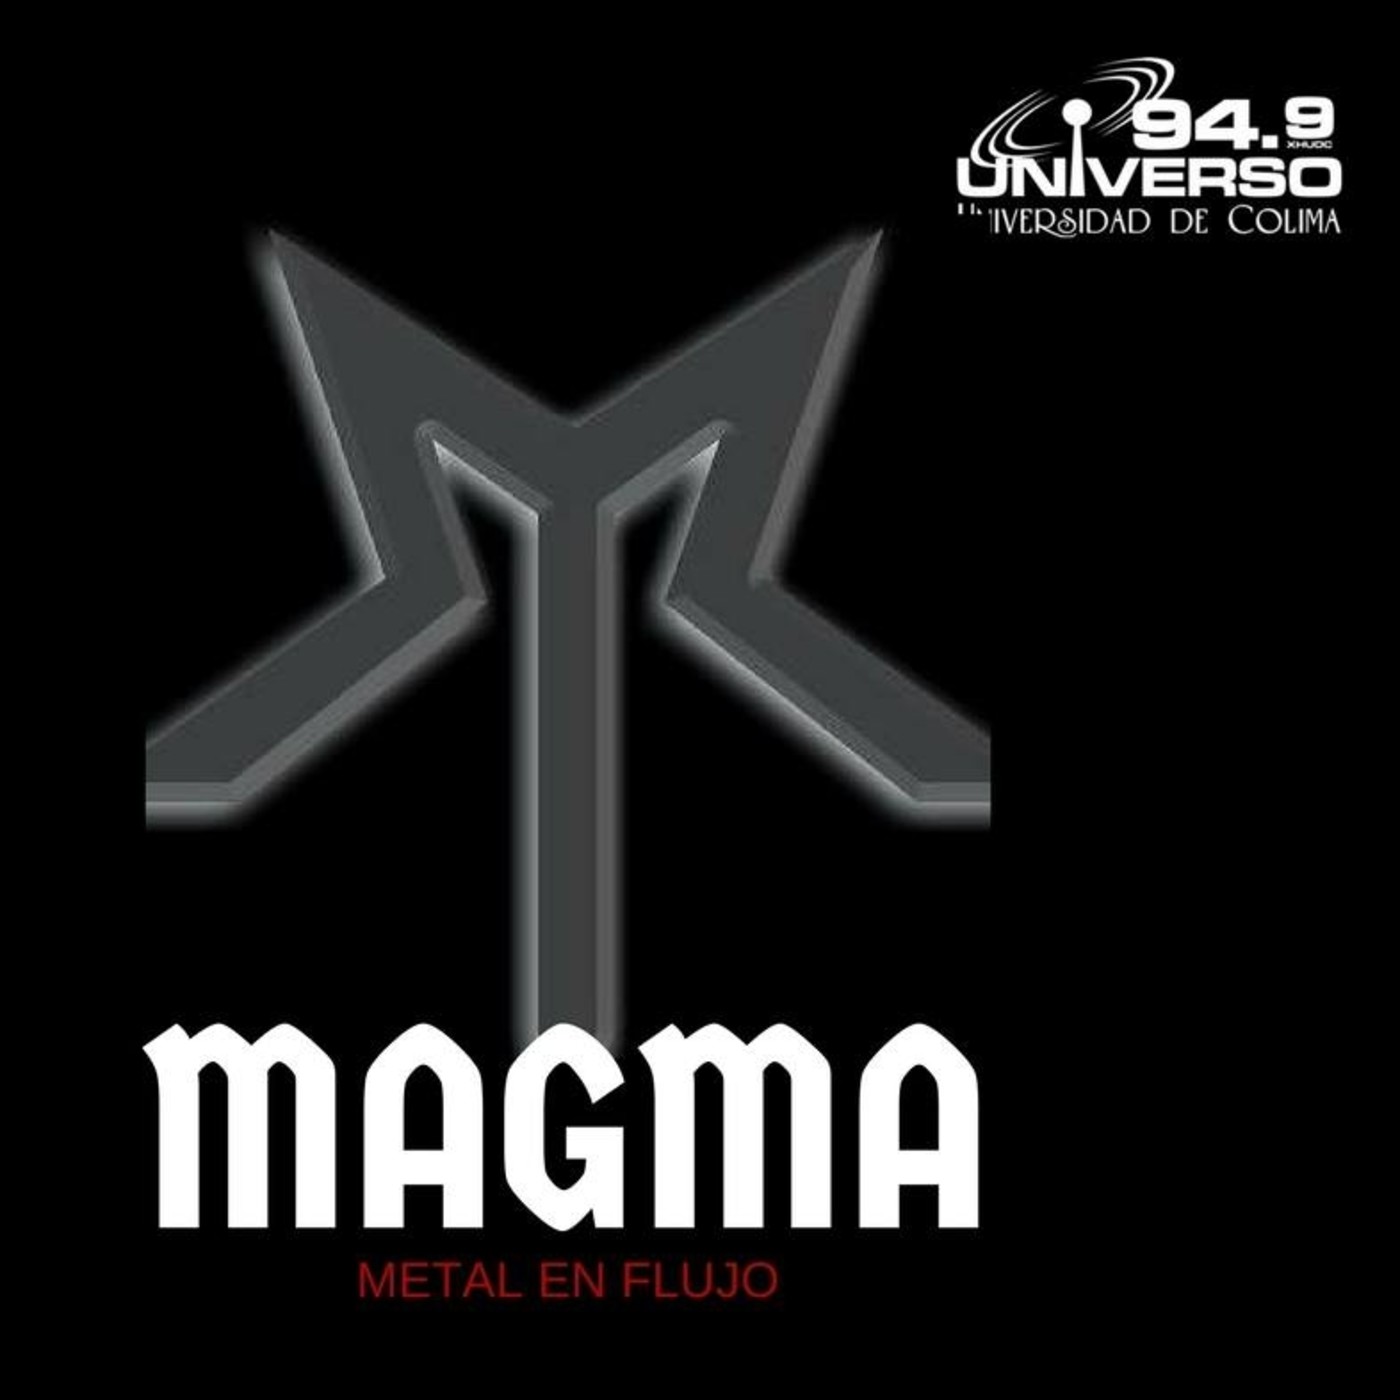 Magma-15 agosto 2018-1